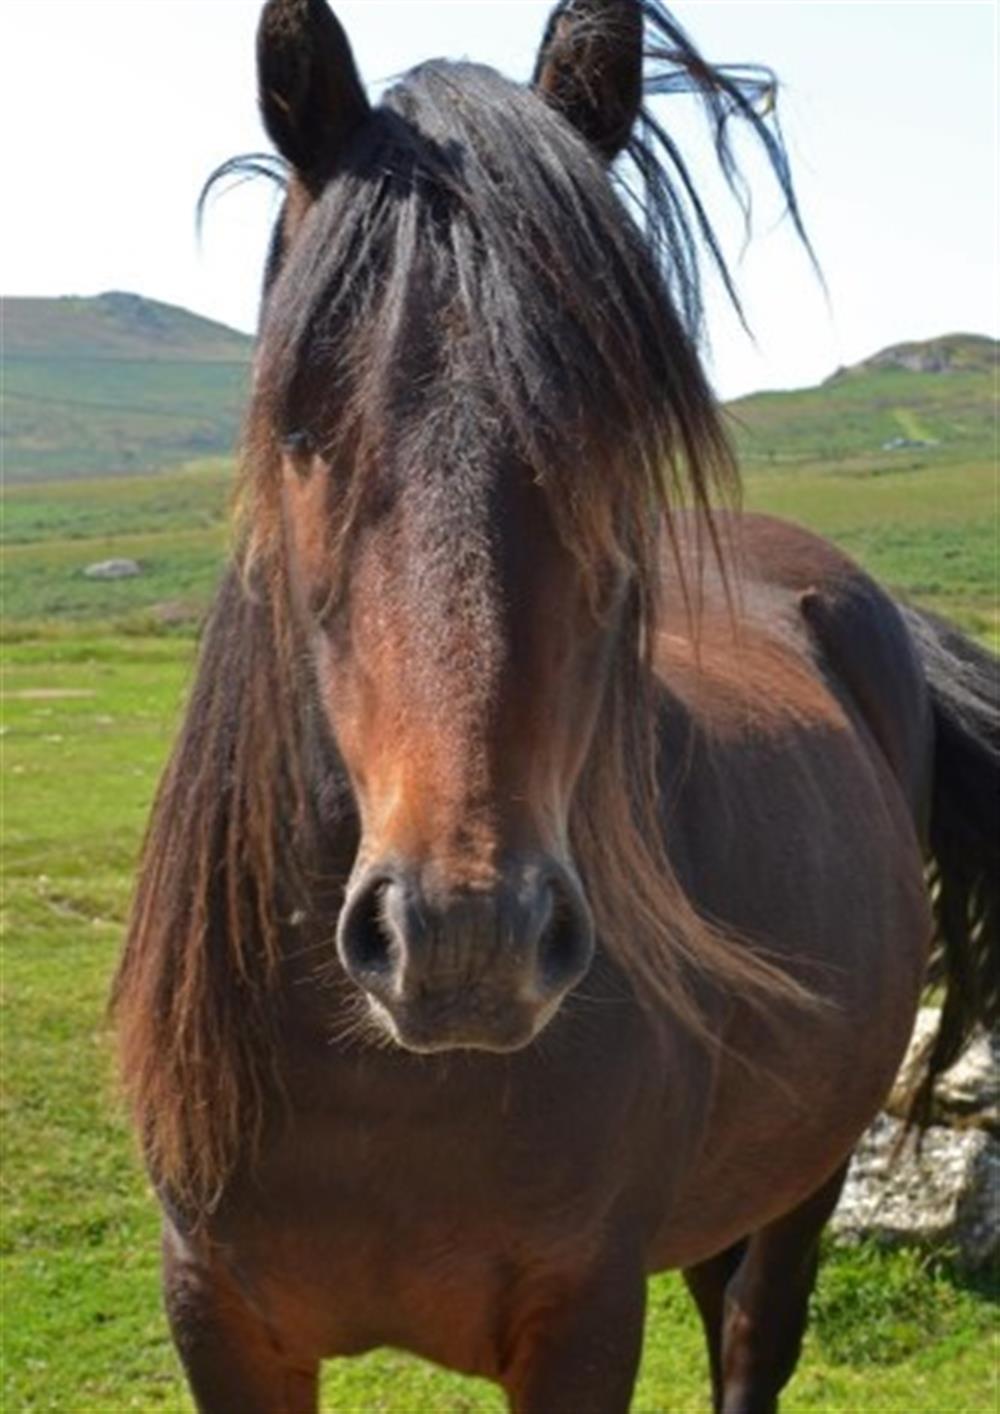 Meet the Dartmoor ponies!